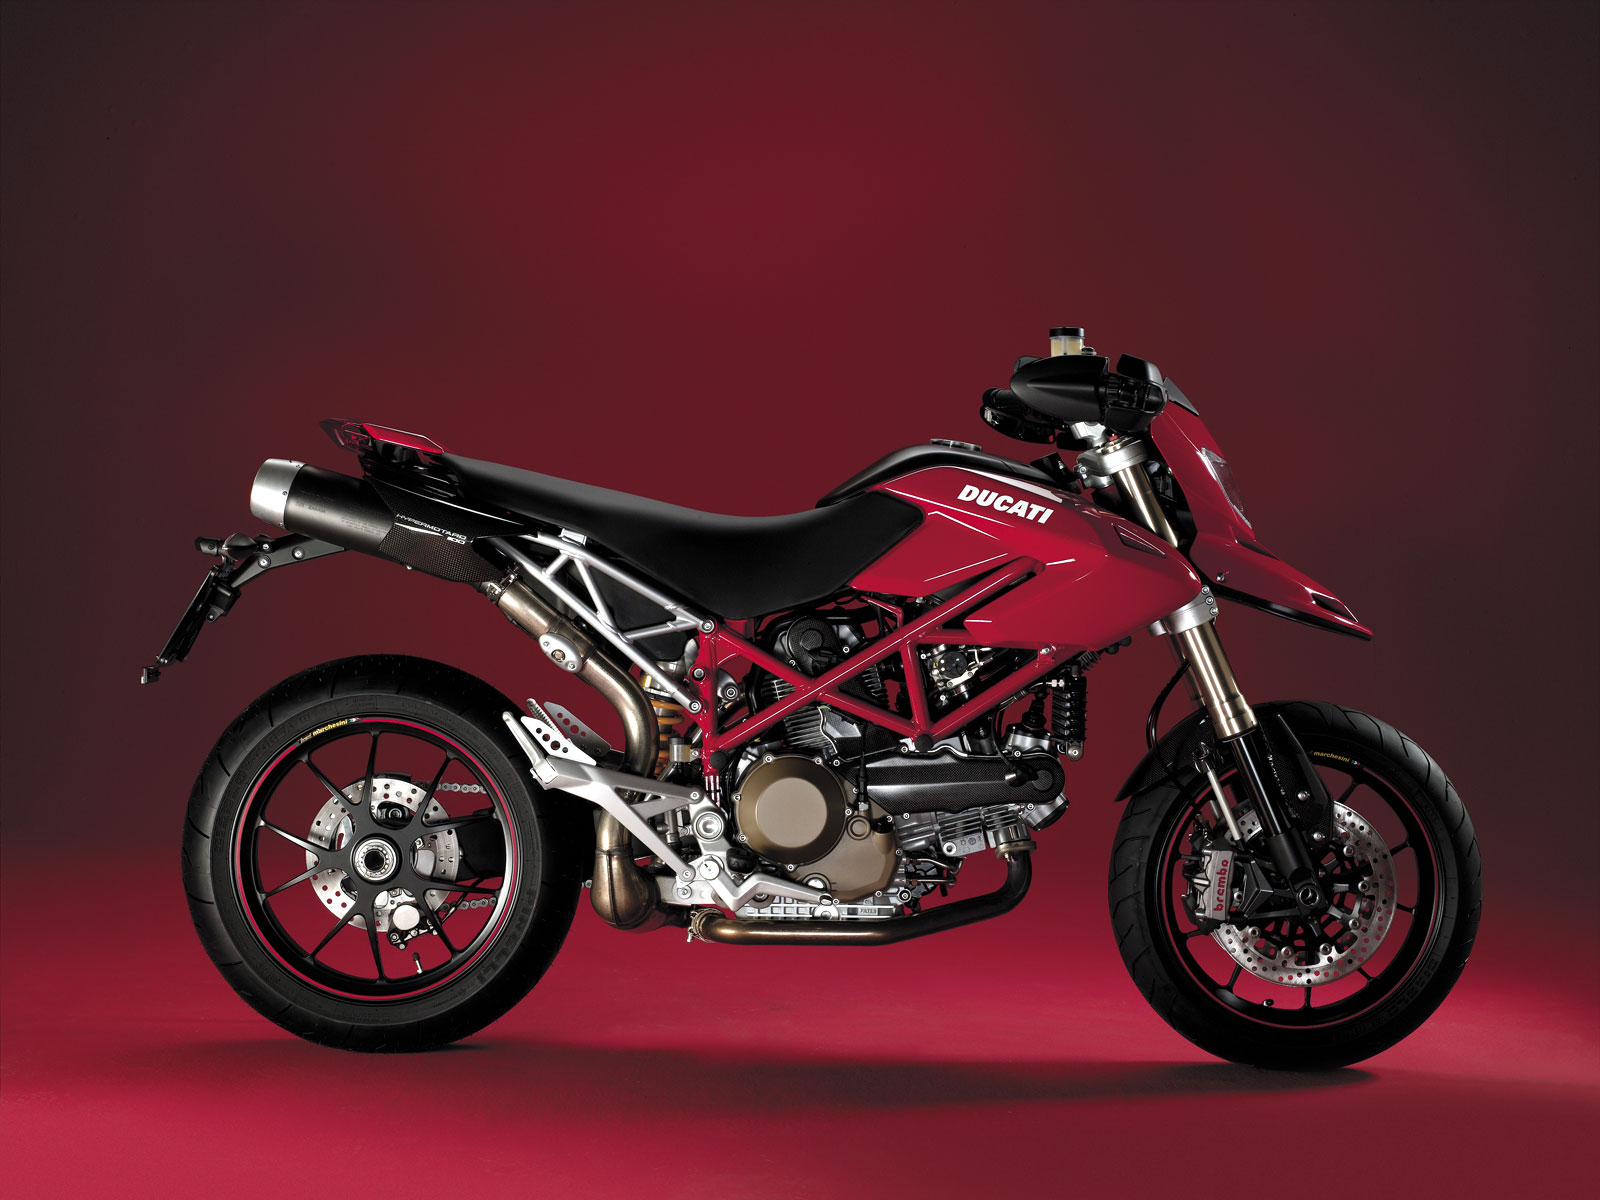 Kaufberatung Gebrauchtkauf Ducati Hypermotard 2008 und 2009 - Ducati  Hypermotard 1100, 796, 821, 939 - Ducati1 Forum für Ducati Rennsport und  Technik